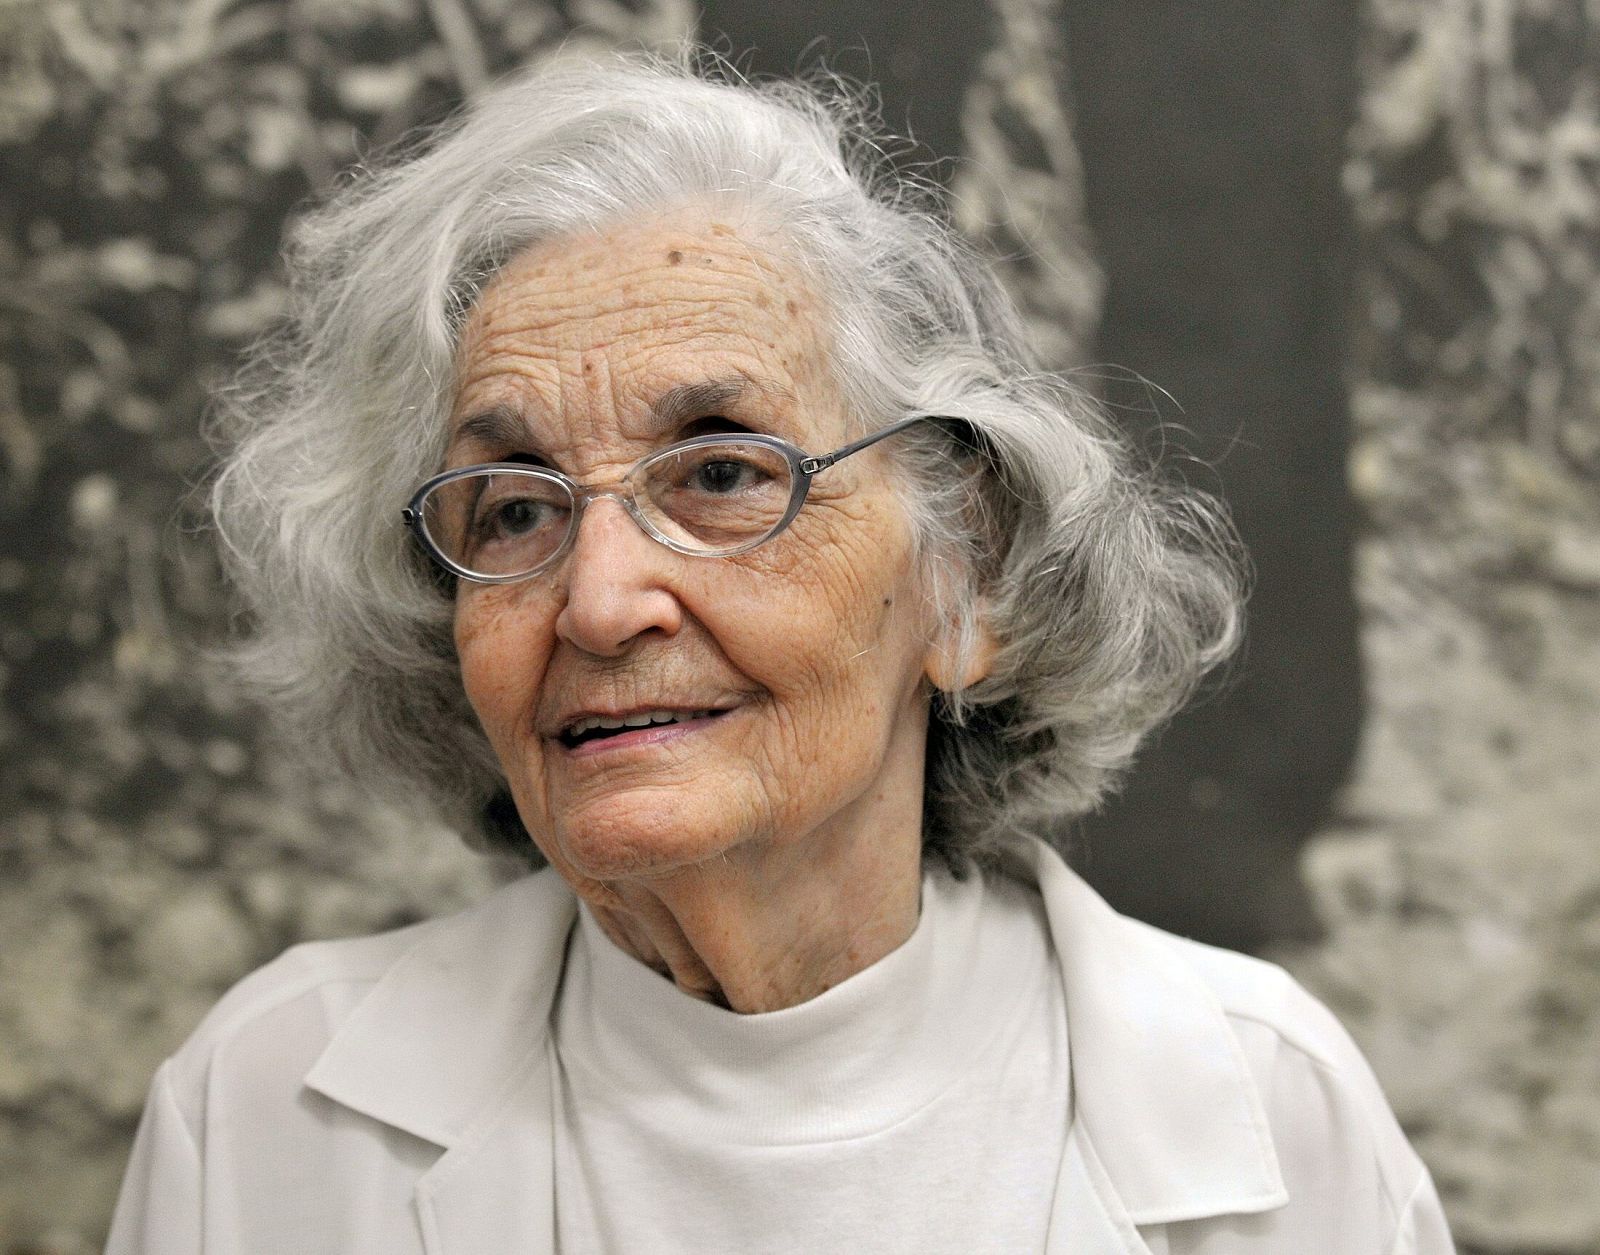 Fina García Marruz es una de las voces más representativas de la poesía hispanoamericana